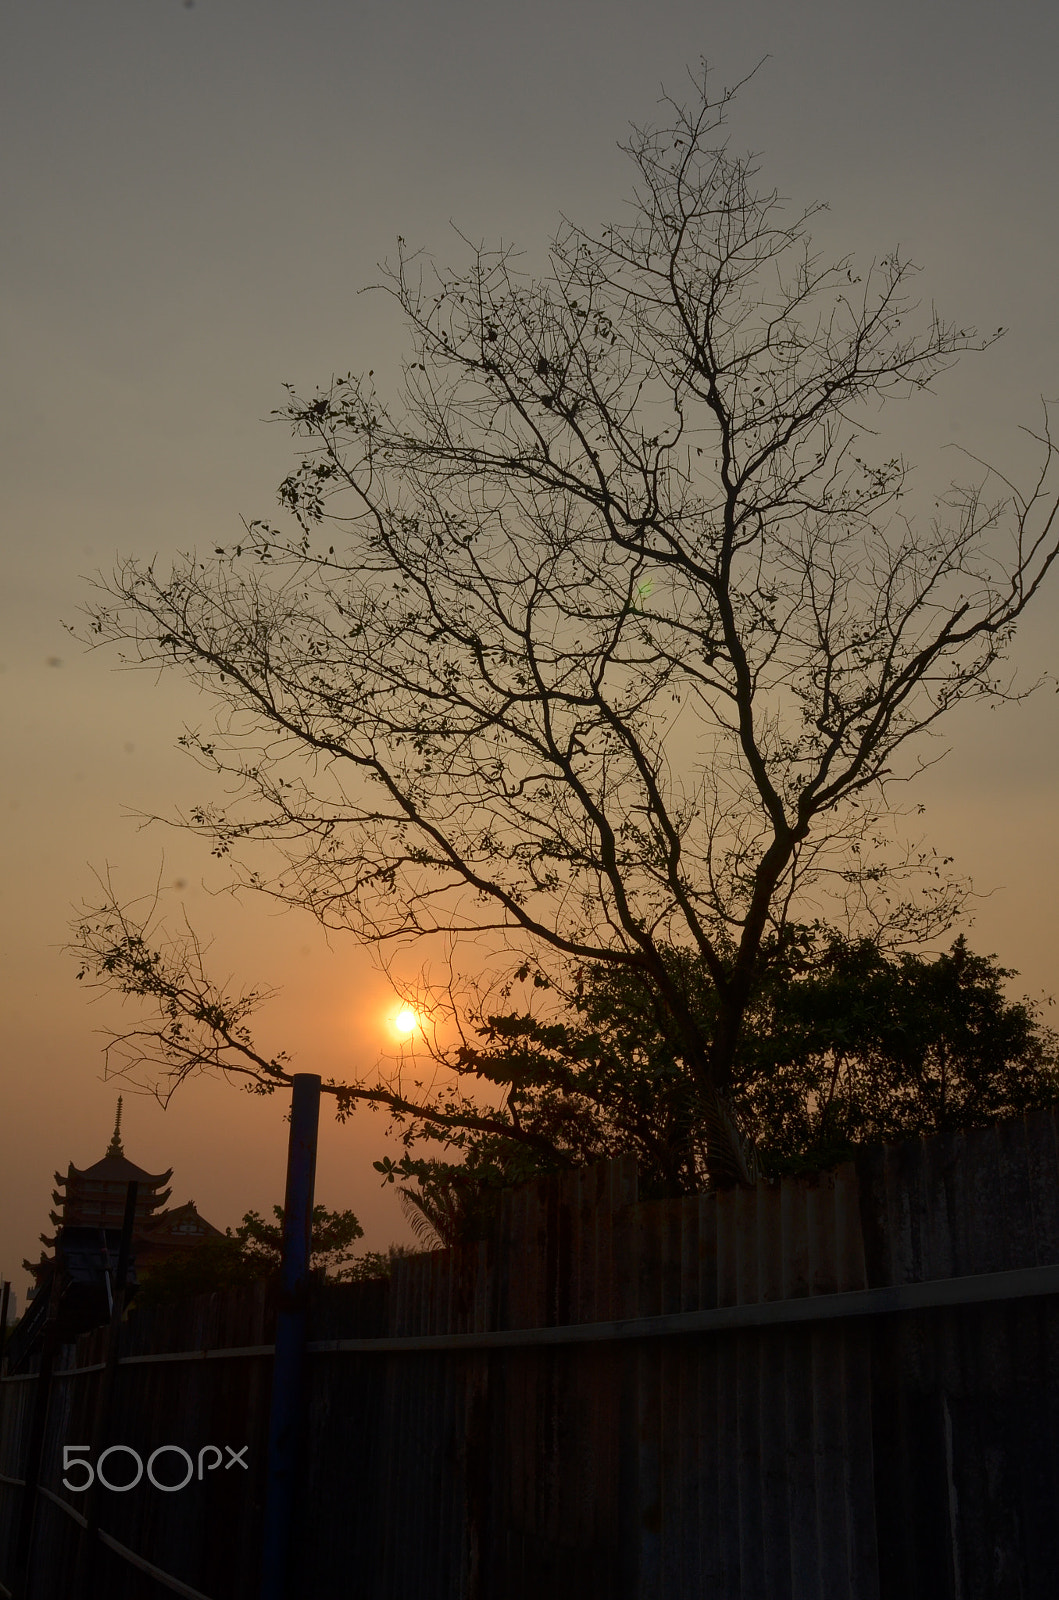 Nikon AF Nikkor 24mm F2.8D sample photo. Sunset @ photography